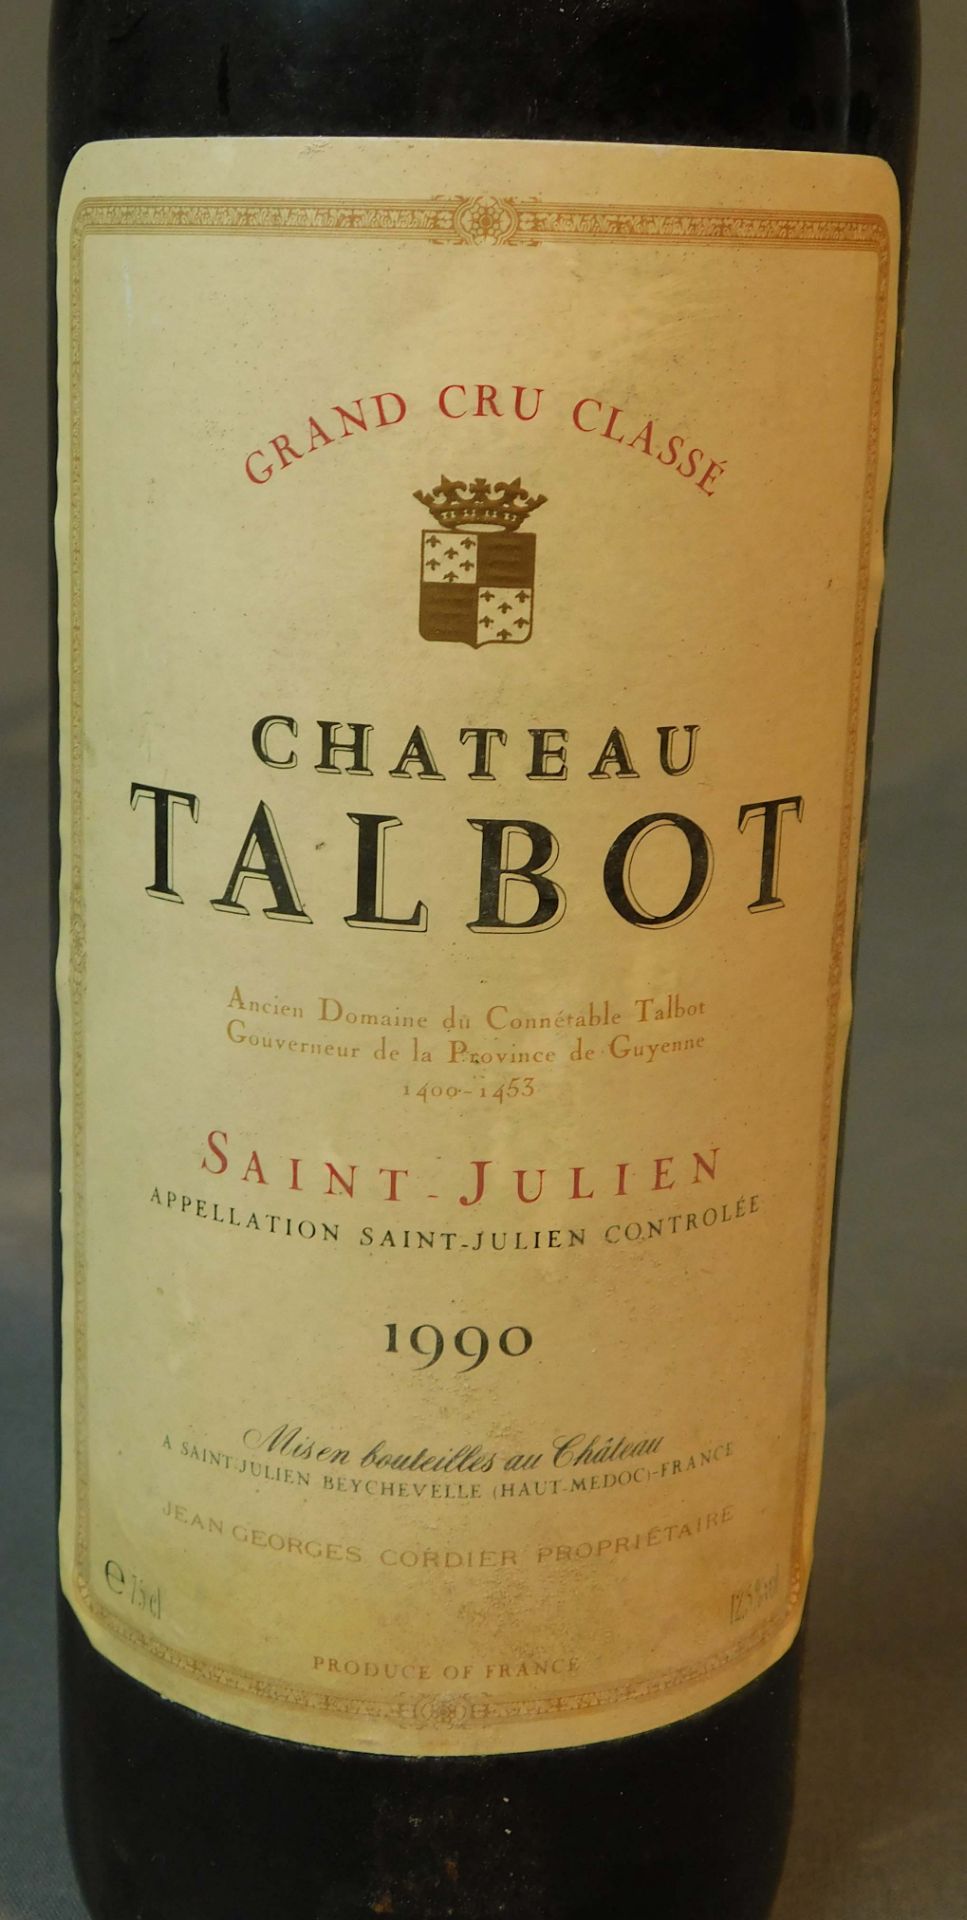 1969 und 1990 Chateau Talbot. Grand Cru Classe. - Image 11 of 16